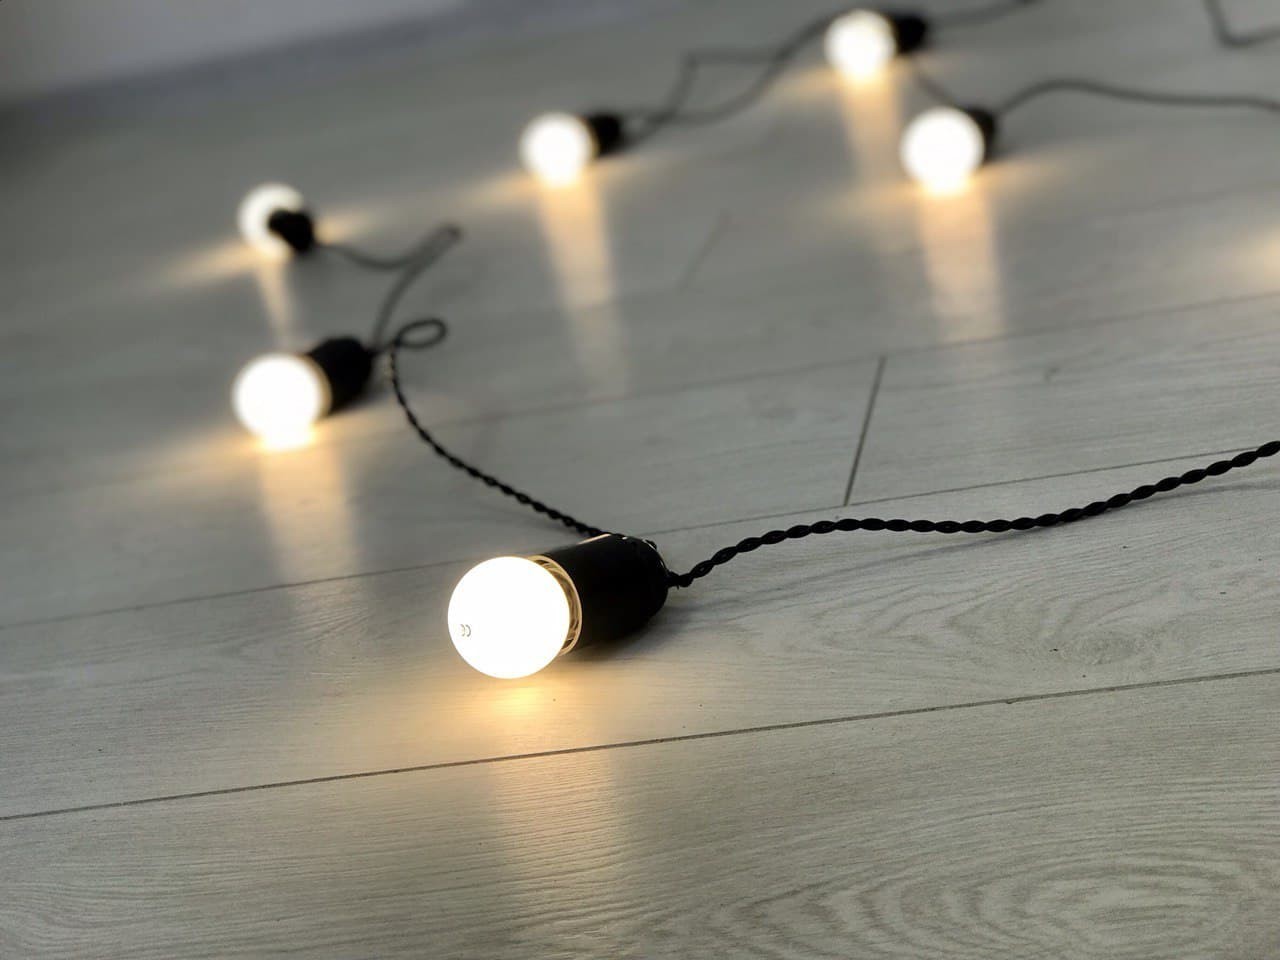 

Черная Ретро Гирлянда Эдисона 5 метров + 2 метра провода к вилке на 11 LED ламп теплого свечения по 1.2Вт Для помещения с дистанционным выключателем